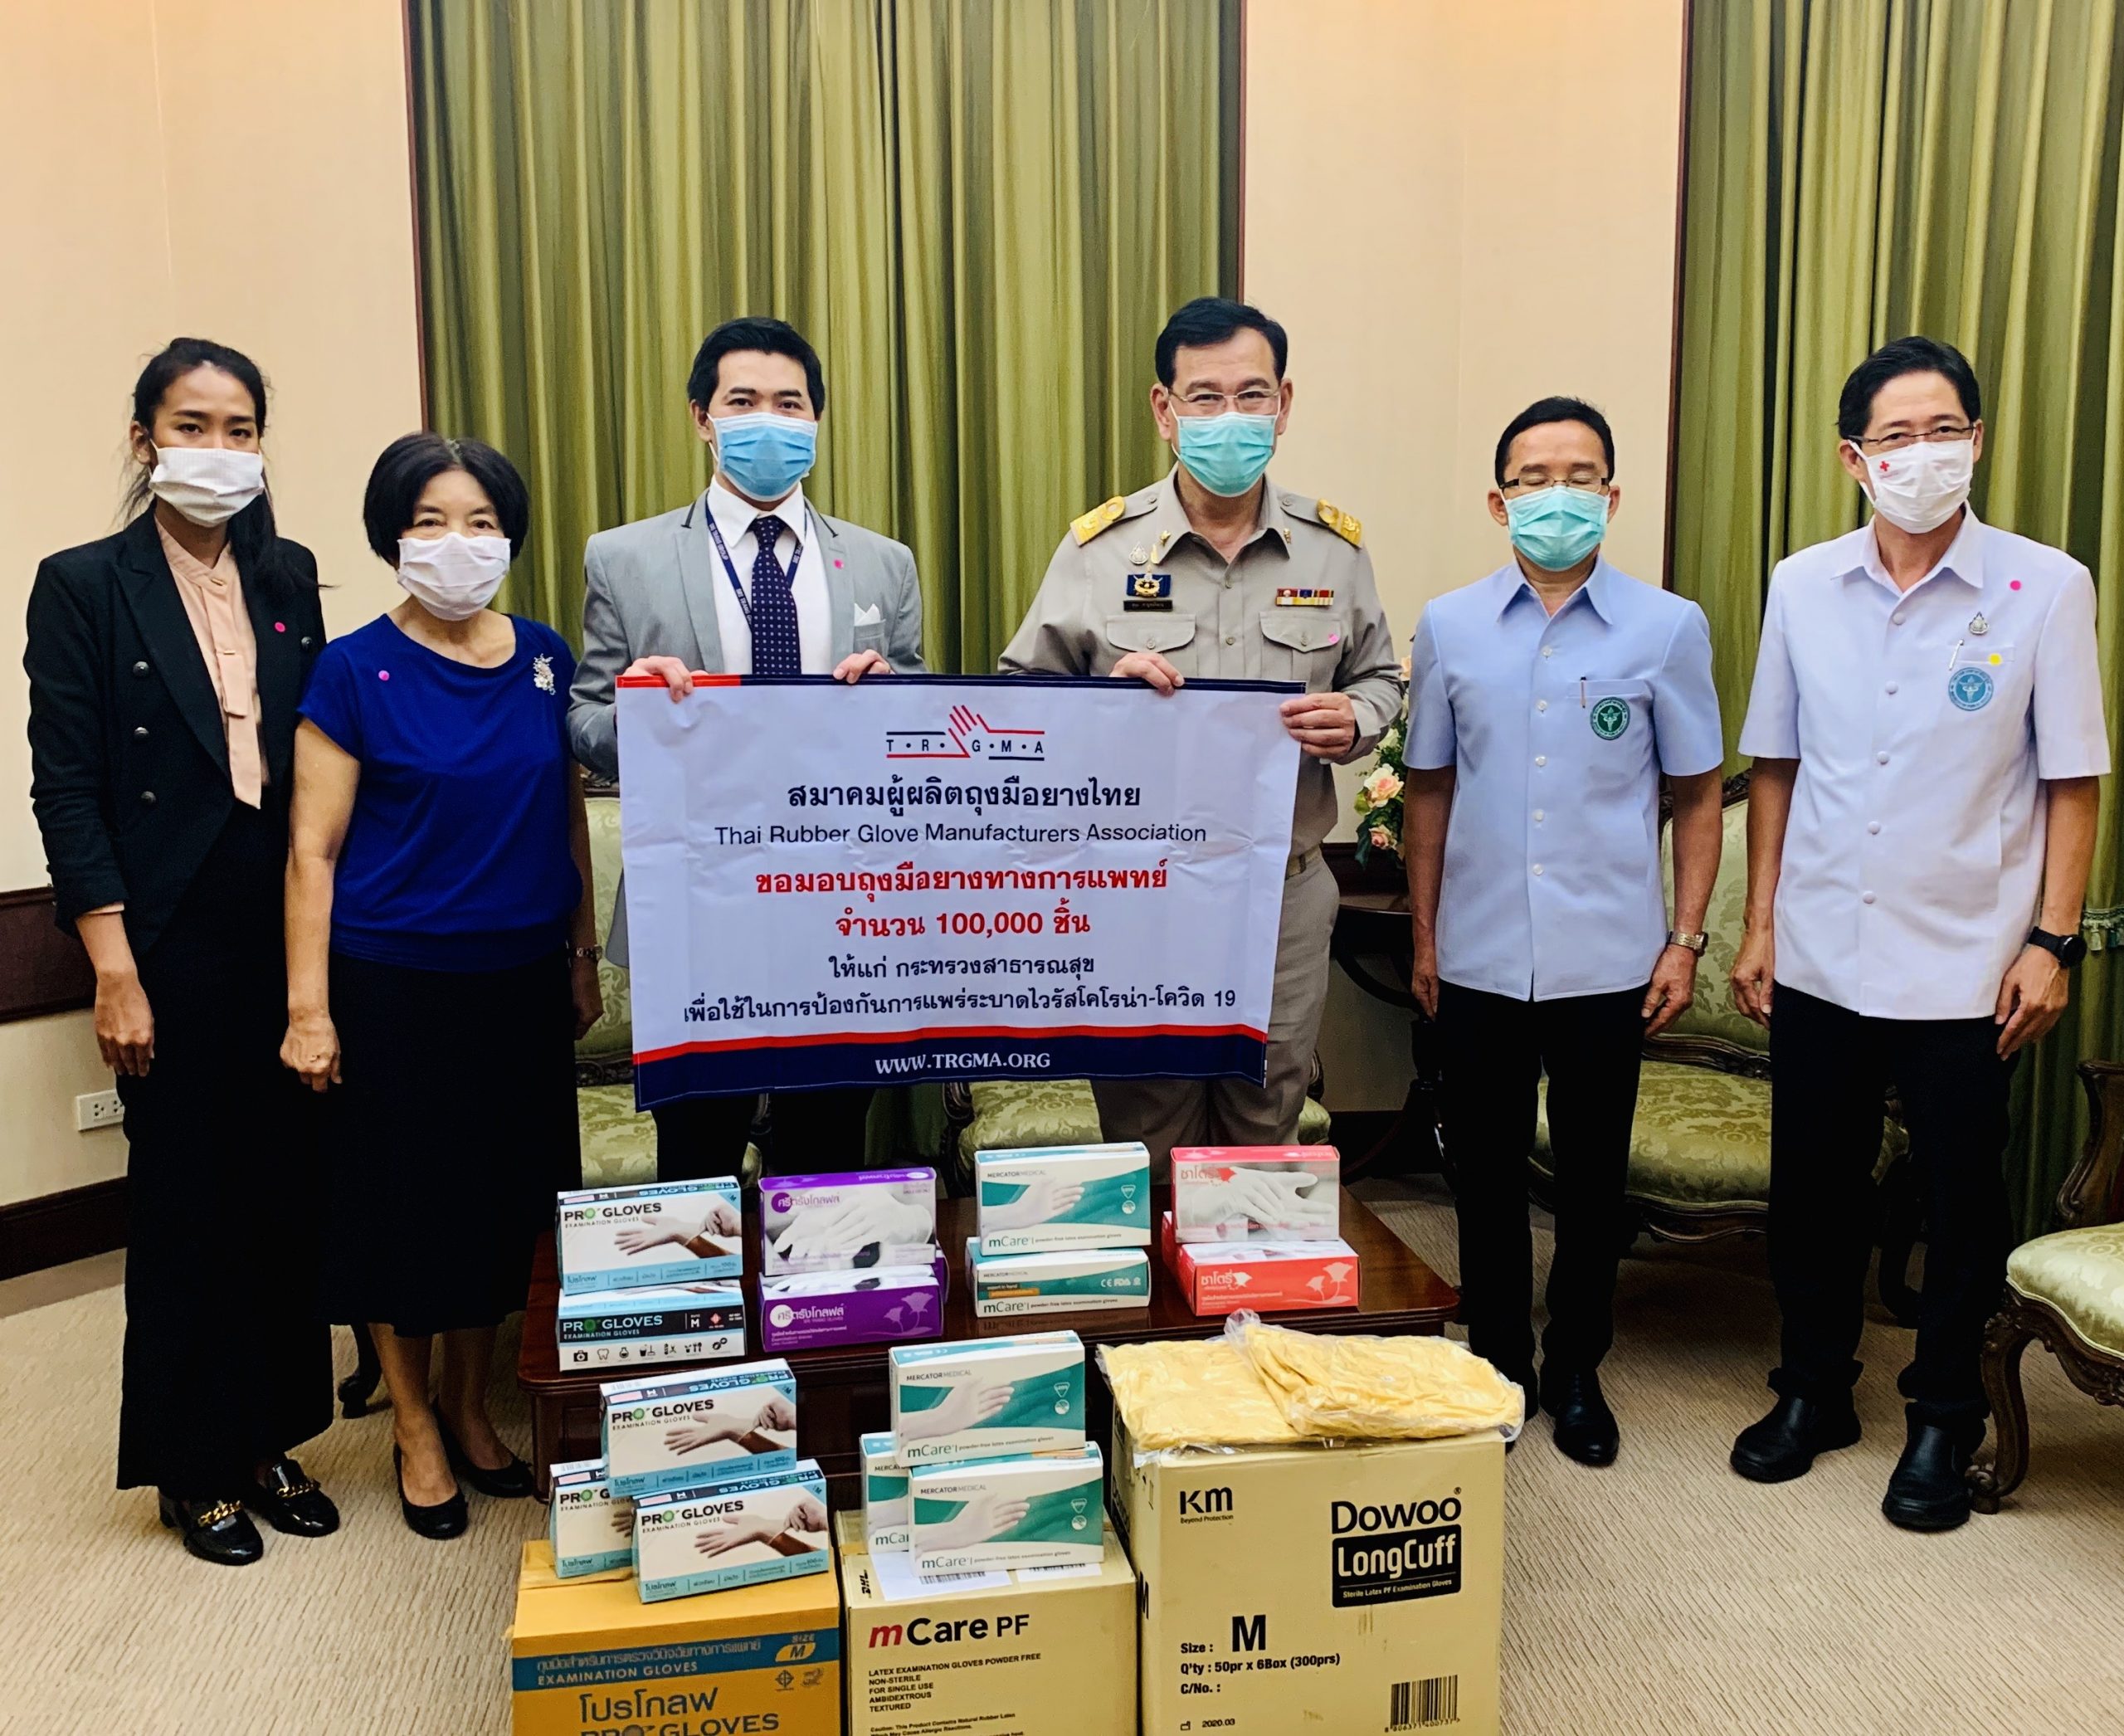 สมาคมผู้ผลิตถุงมือยางไทยร่วมใจบริจาคถุงมือยางทางการแพทย์ 1 แสนชิ้นสู้โควิด-19